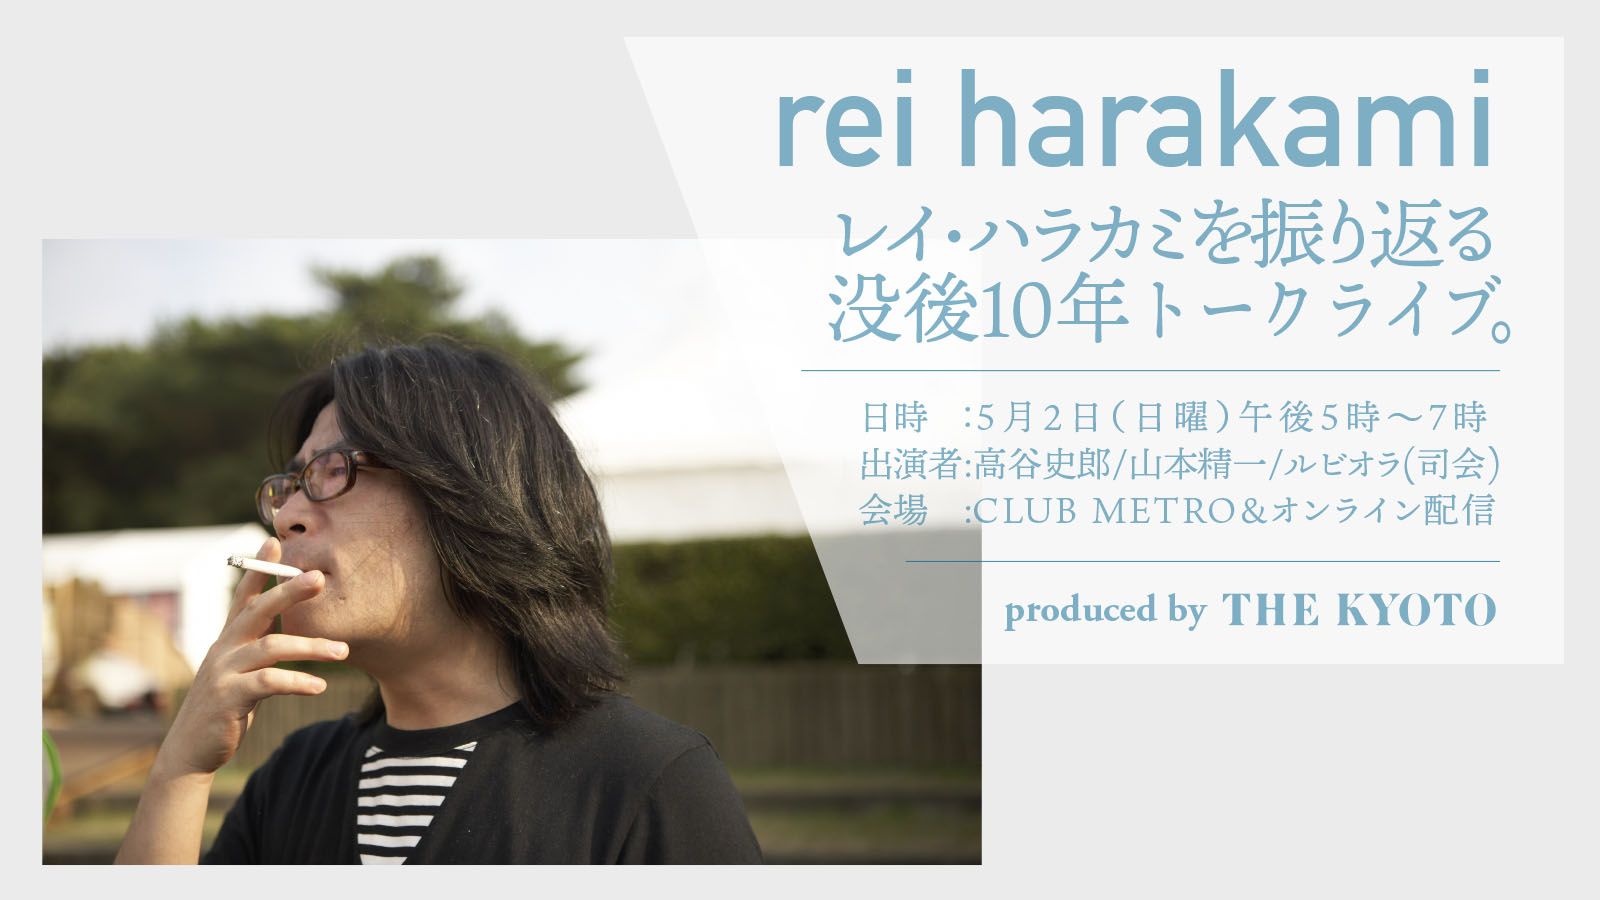 「レイ・ハラカミを振り返る -没後10年トークライブ-」京都メトロで開催、生配信も決定
